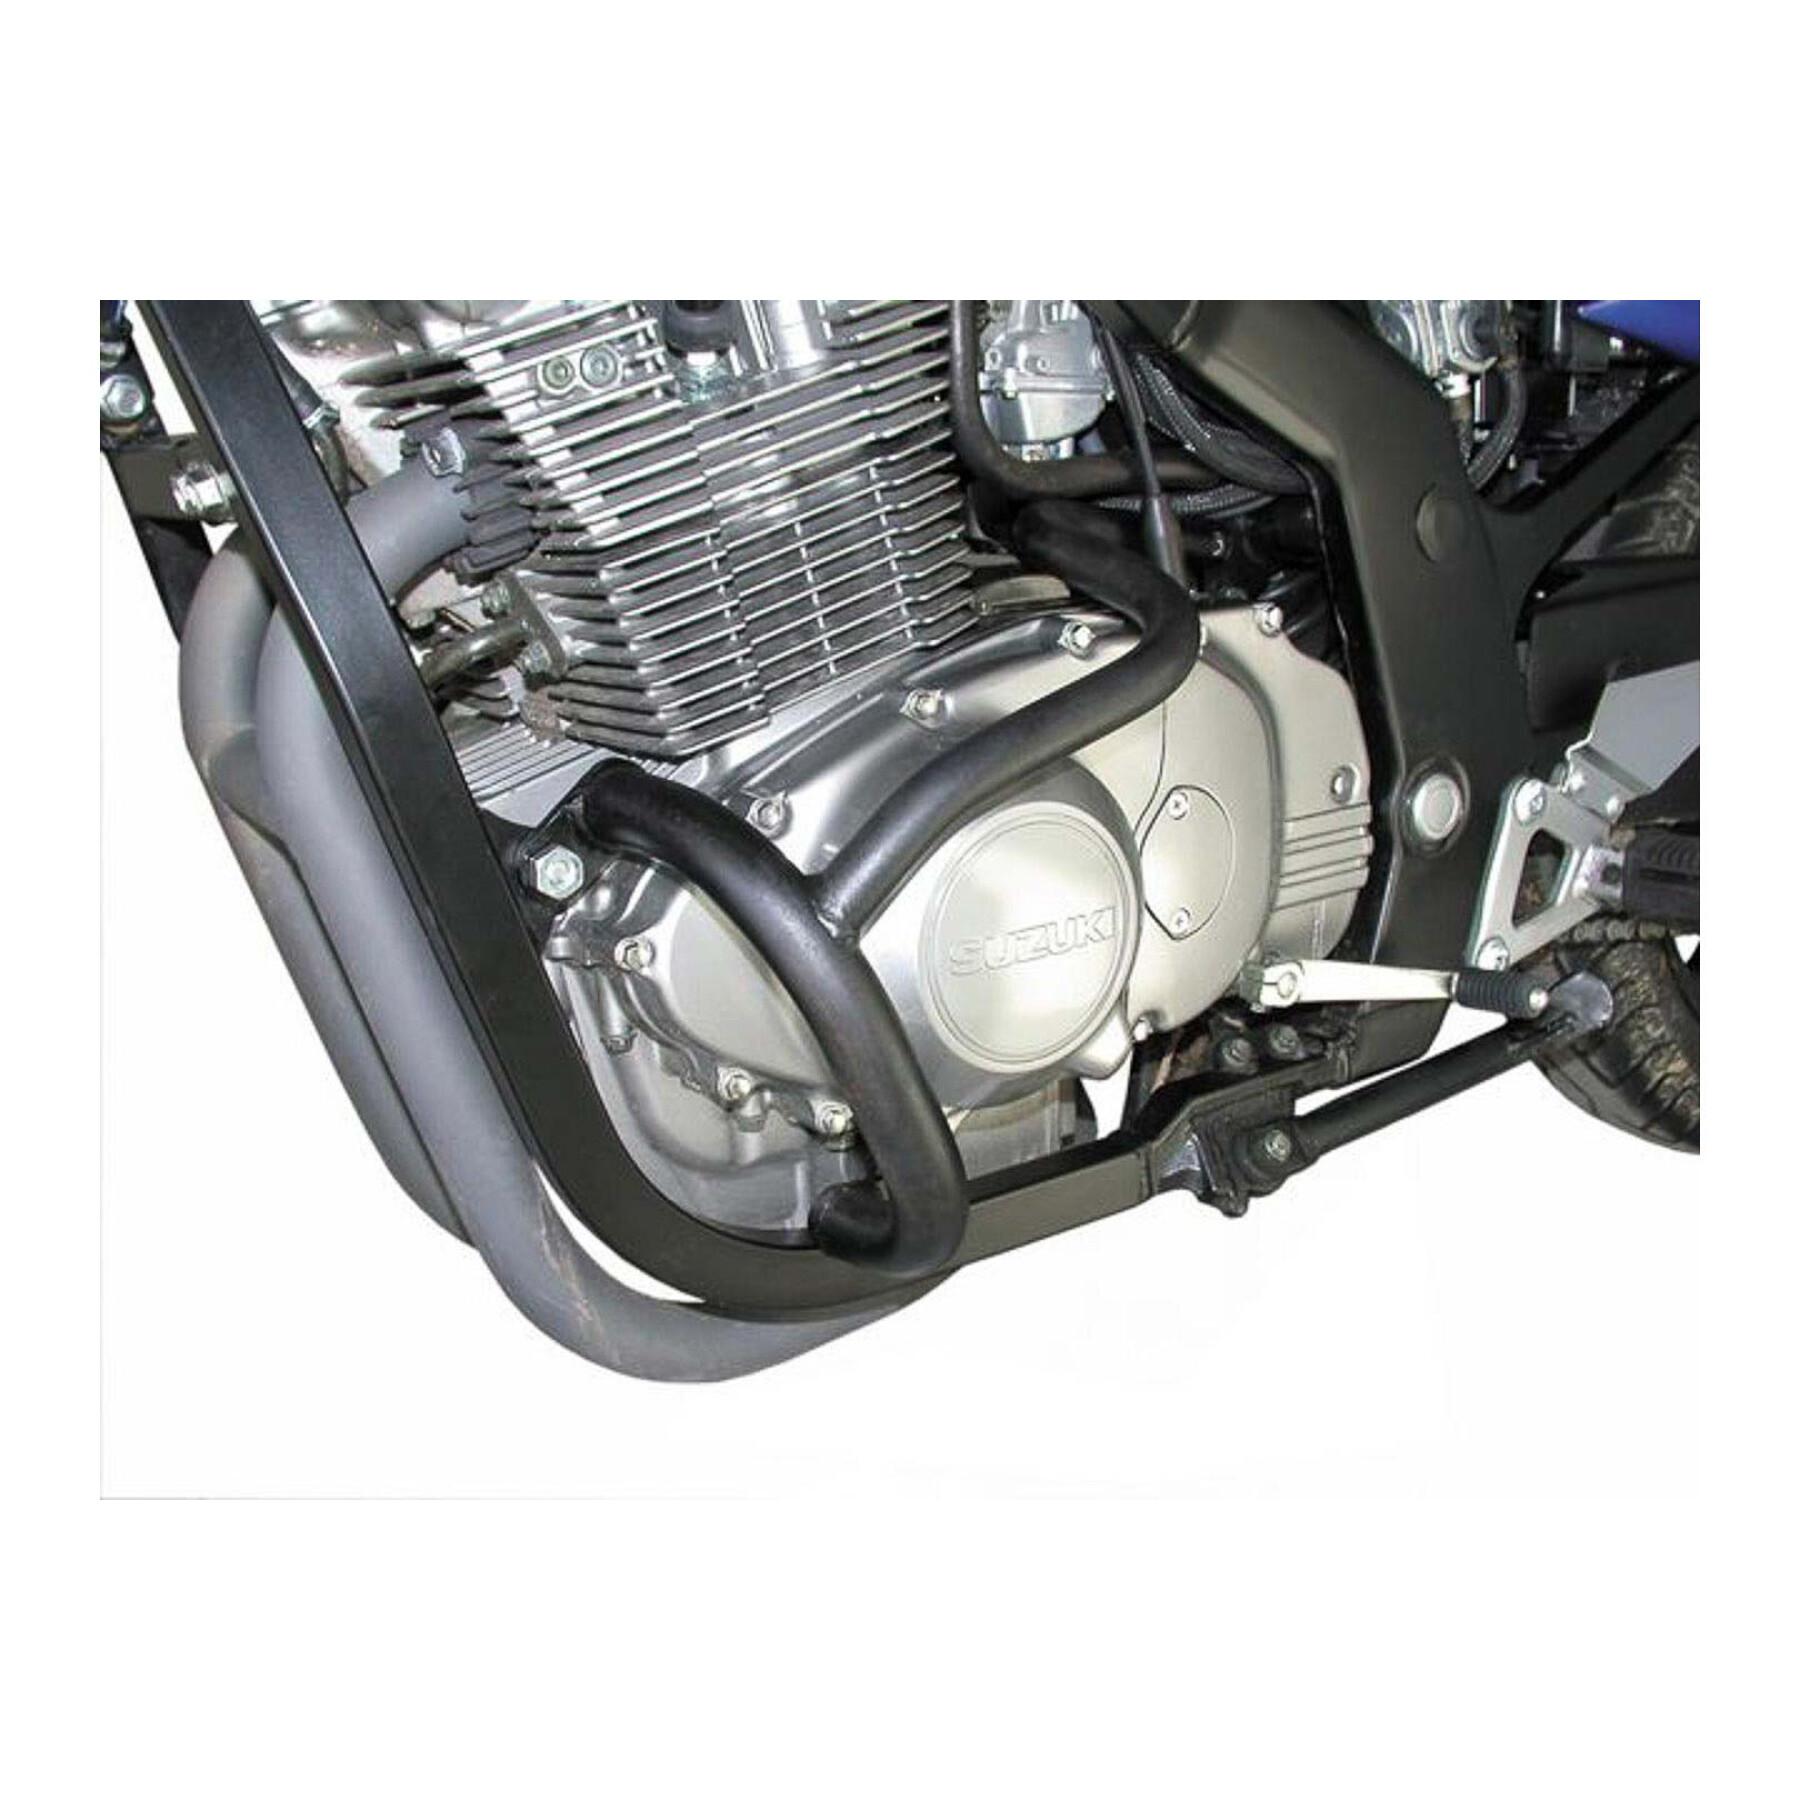 Motorrad-Standartenschutz Sw-Motech Crashbar Suzuki Gs 500 E (89-06)